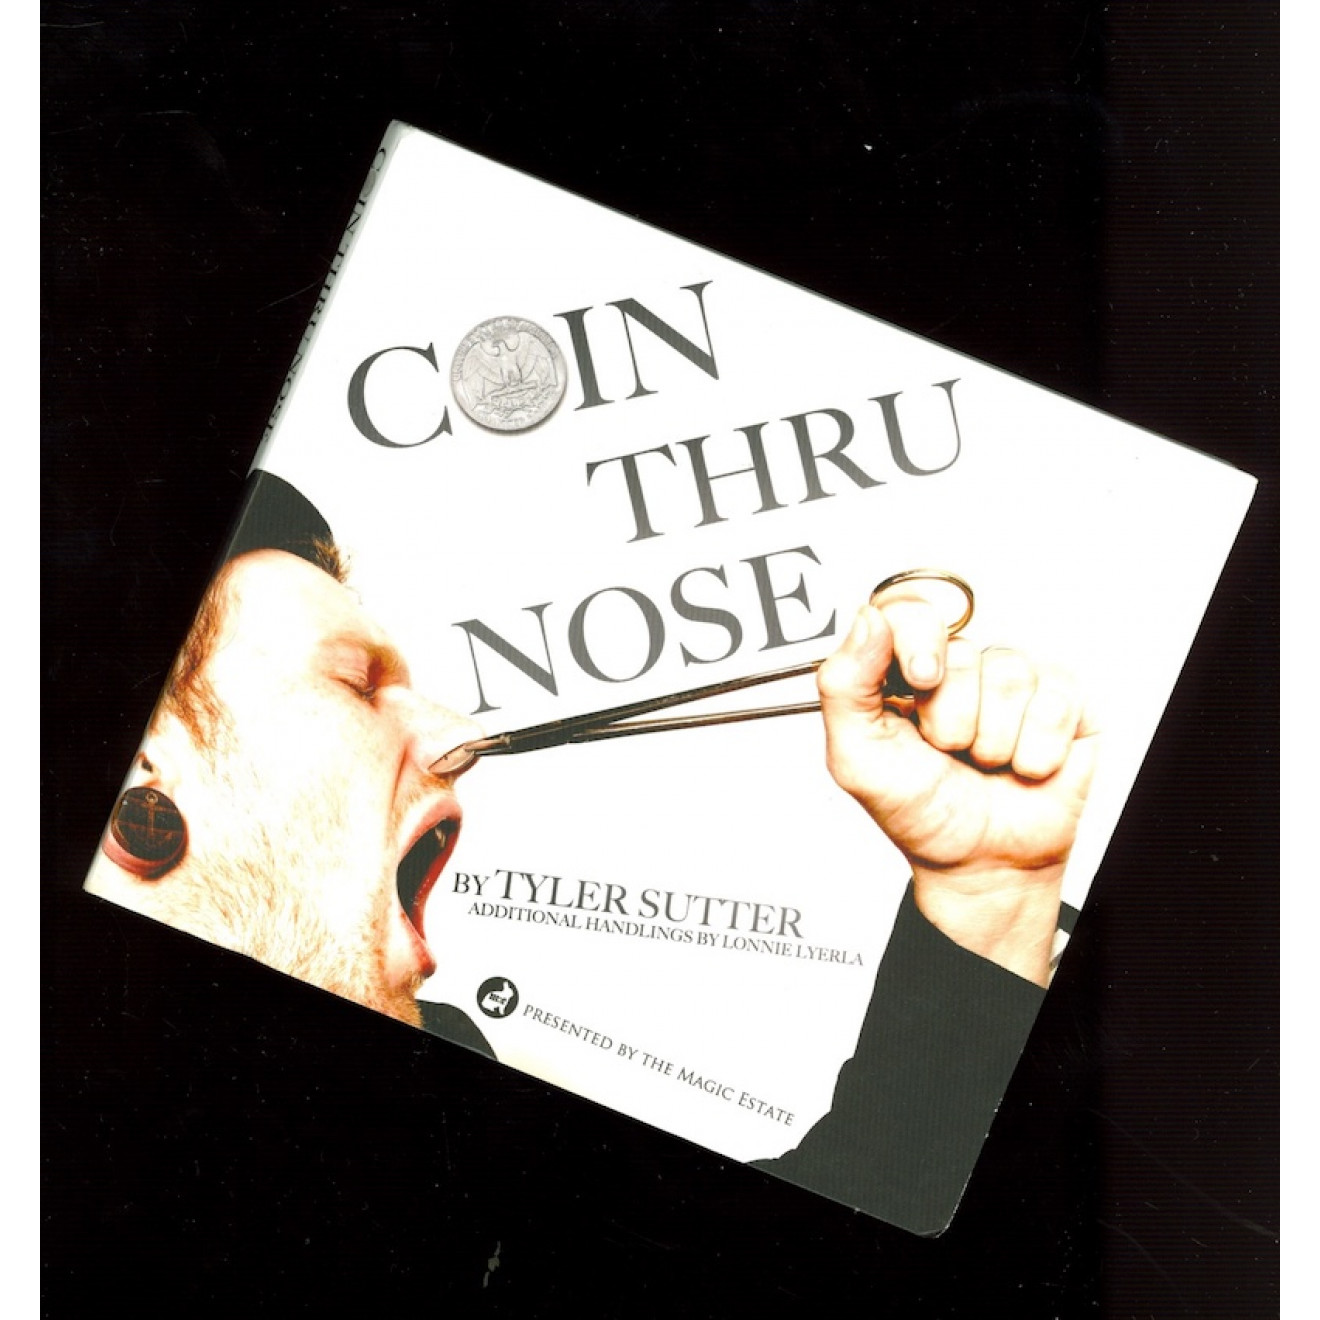 Coin Thru Nose